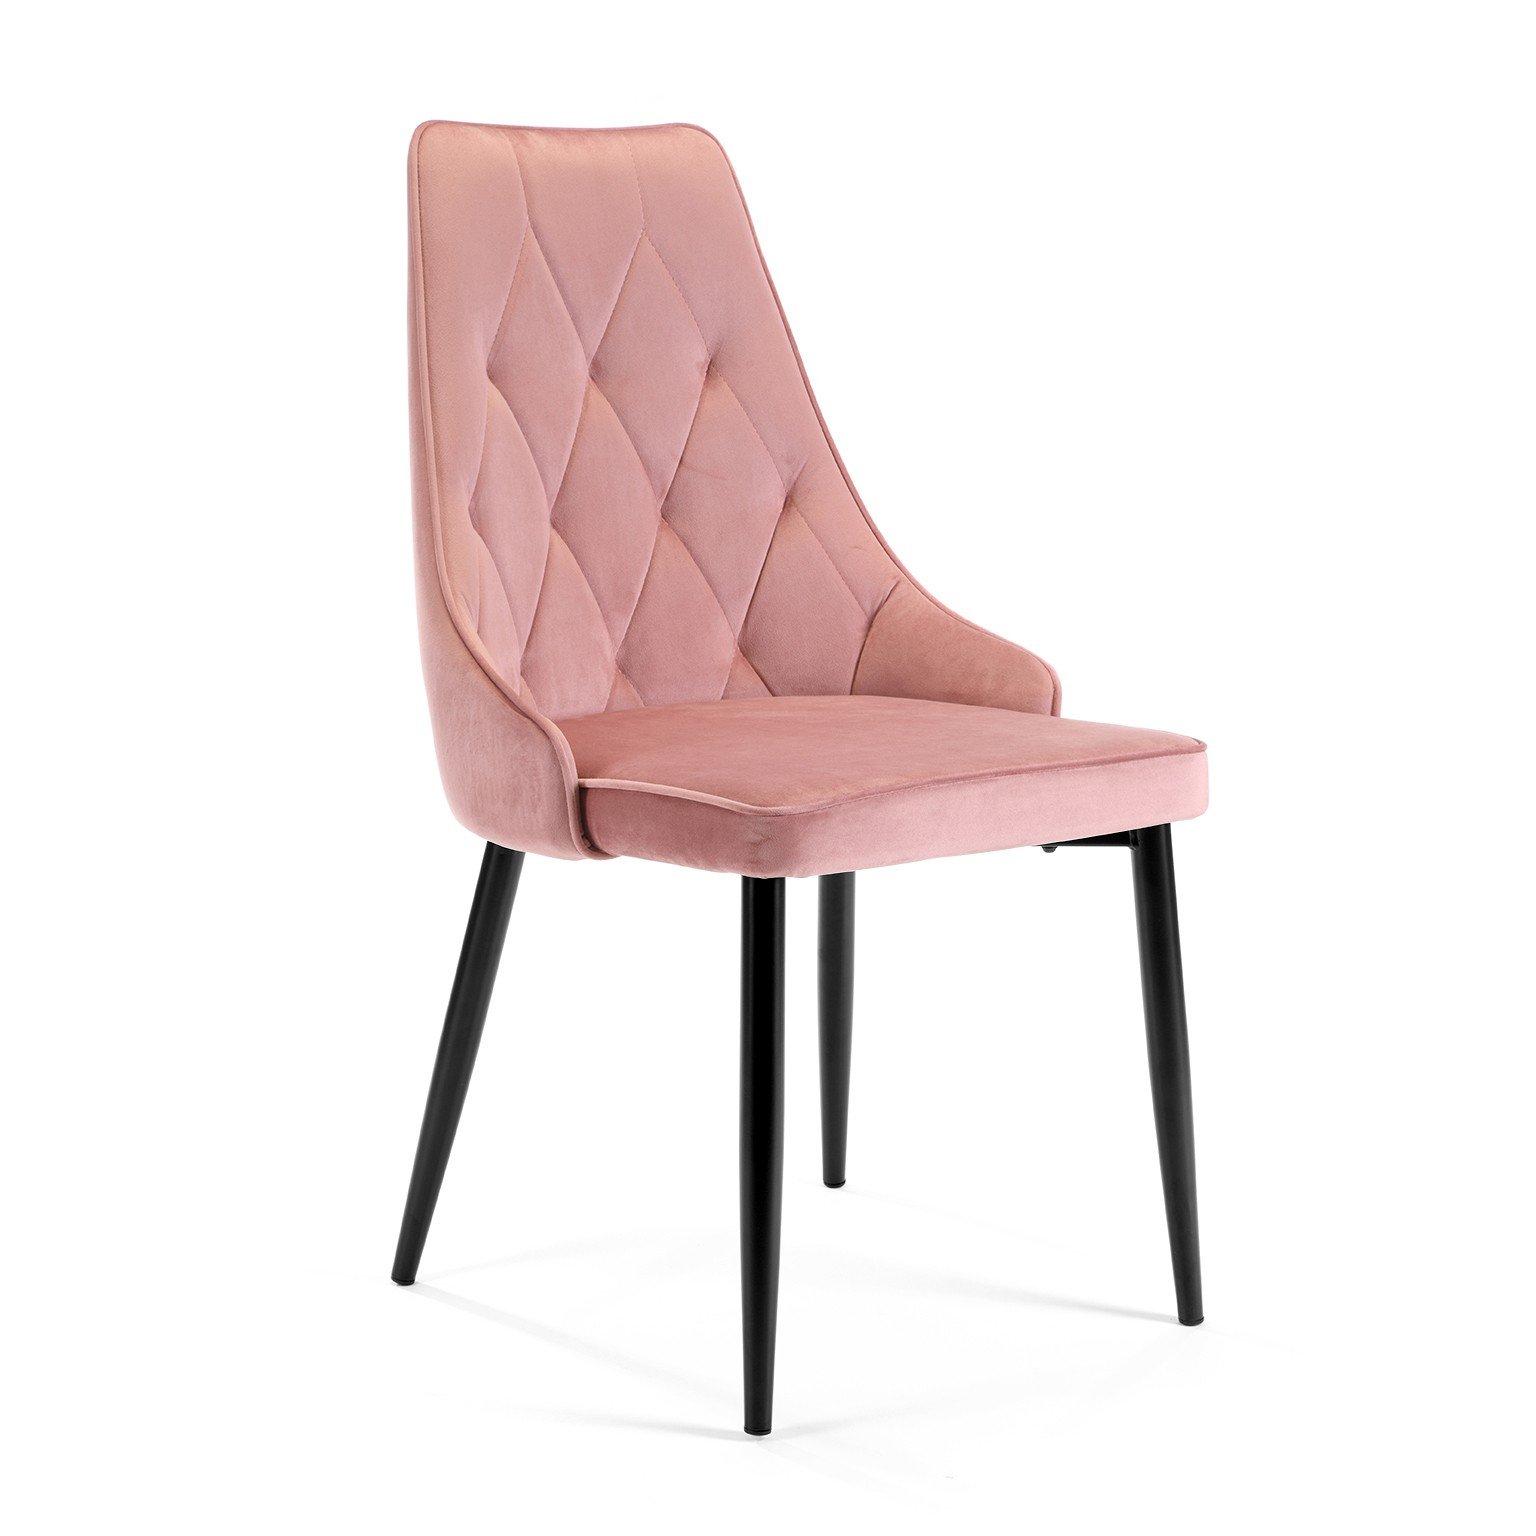 4-ių kėdžių komplektas SJ.054, rožinė-1